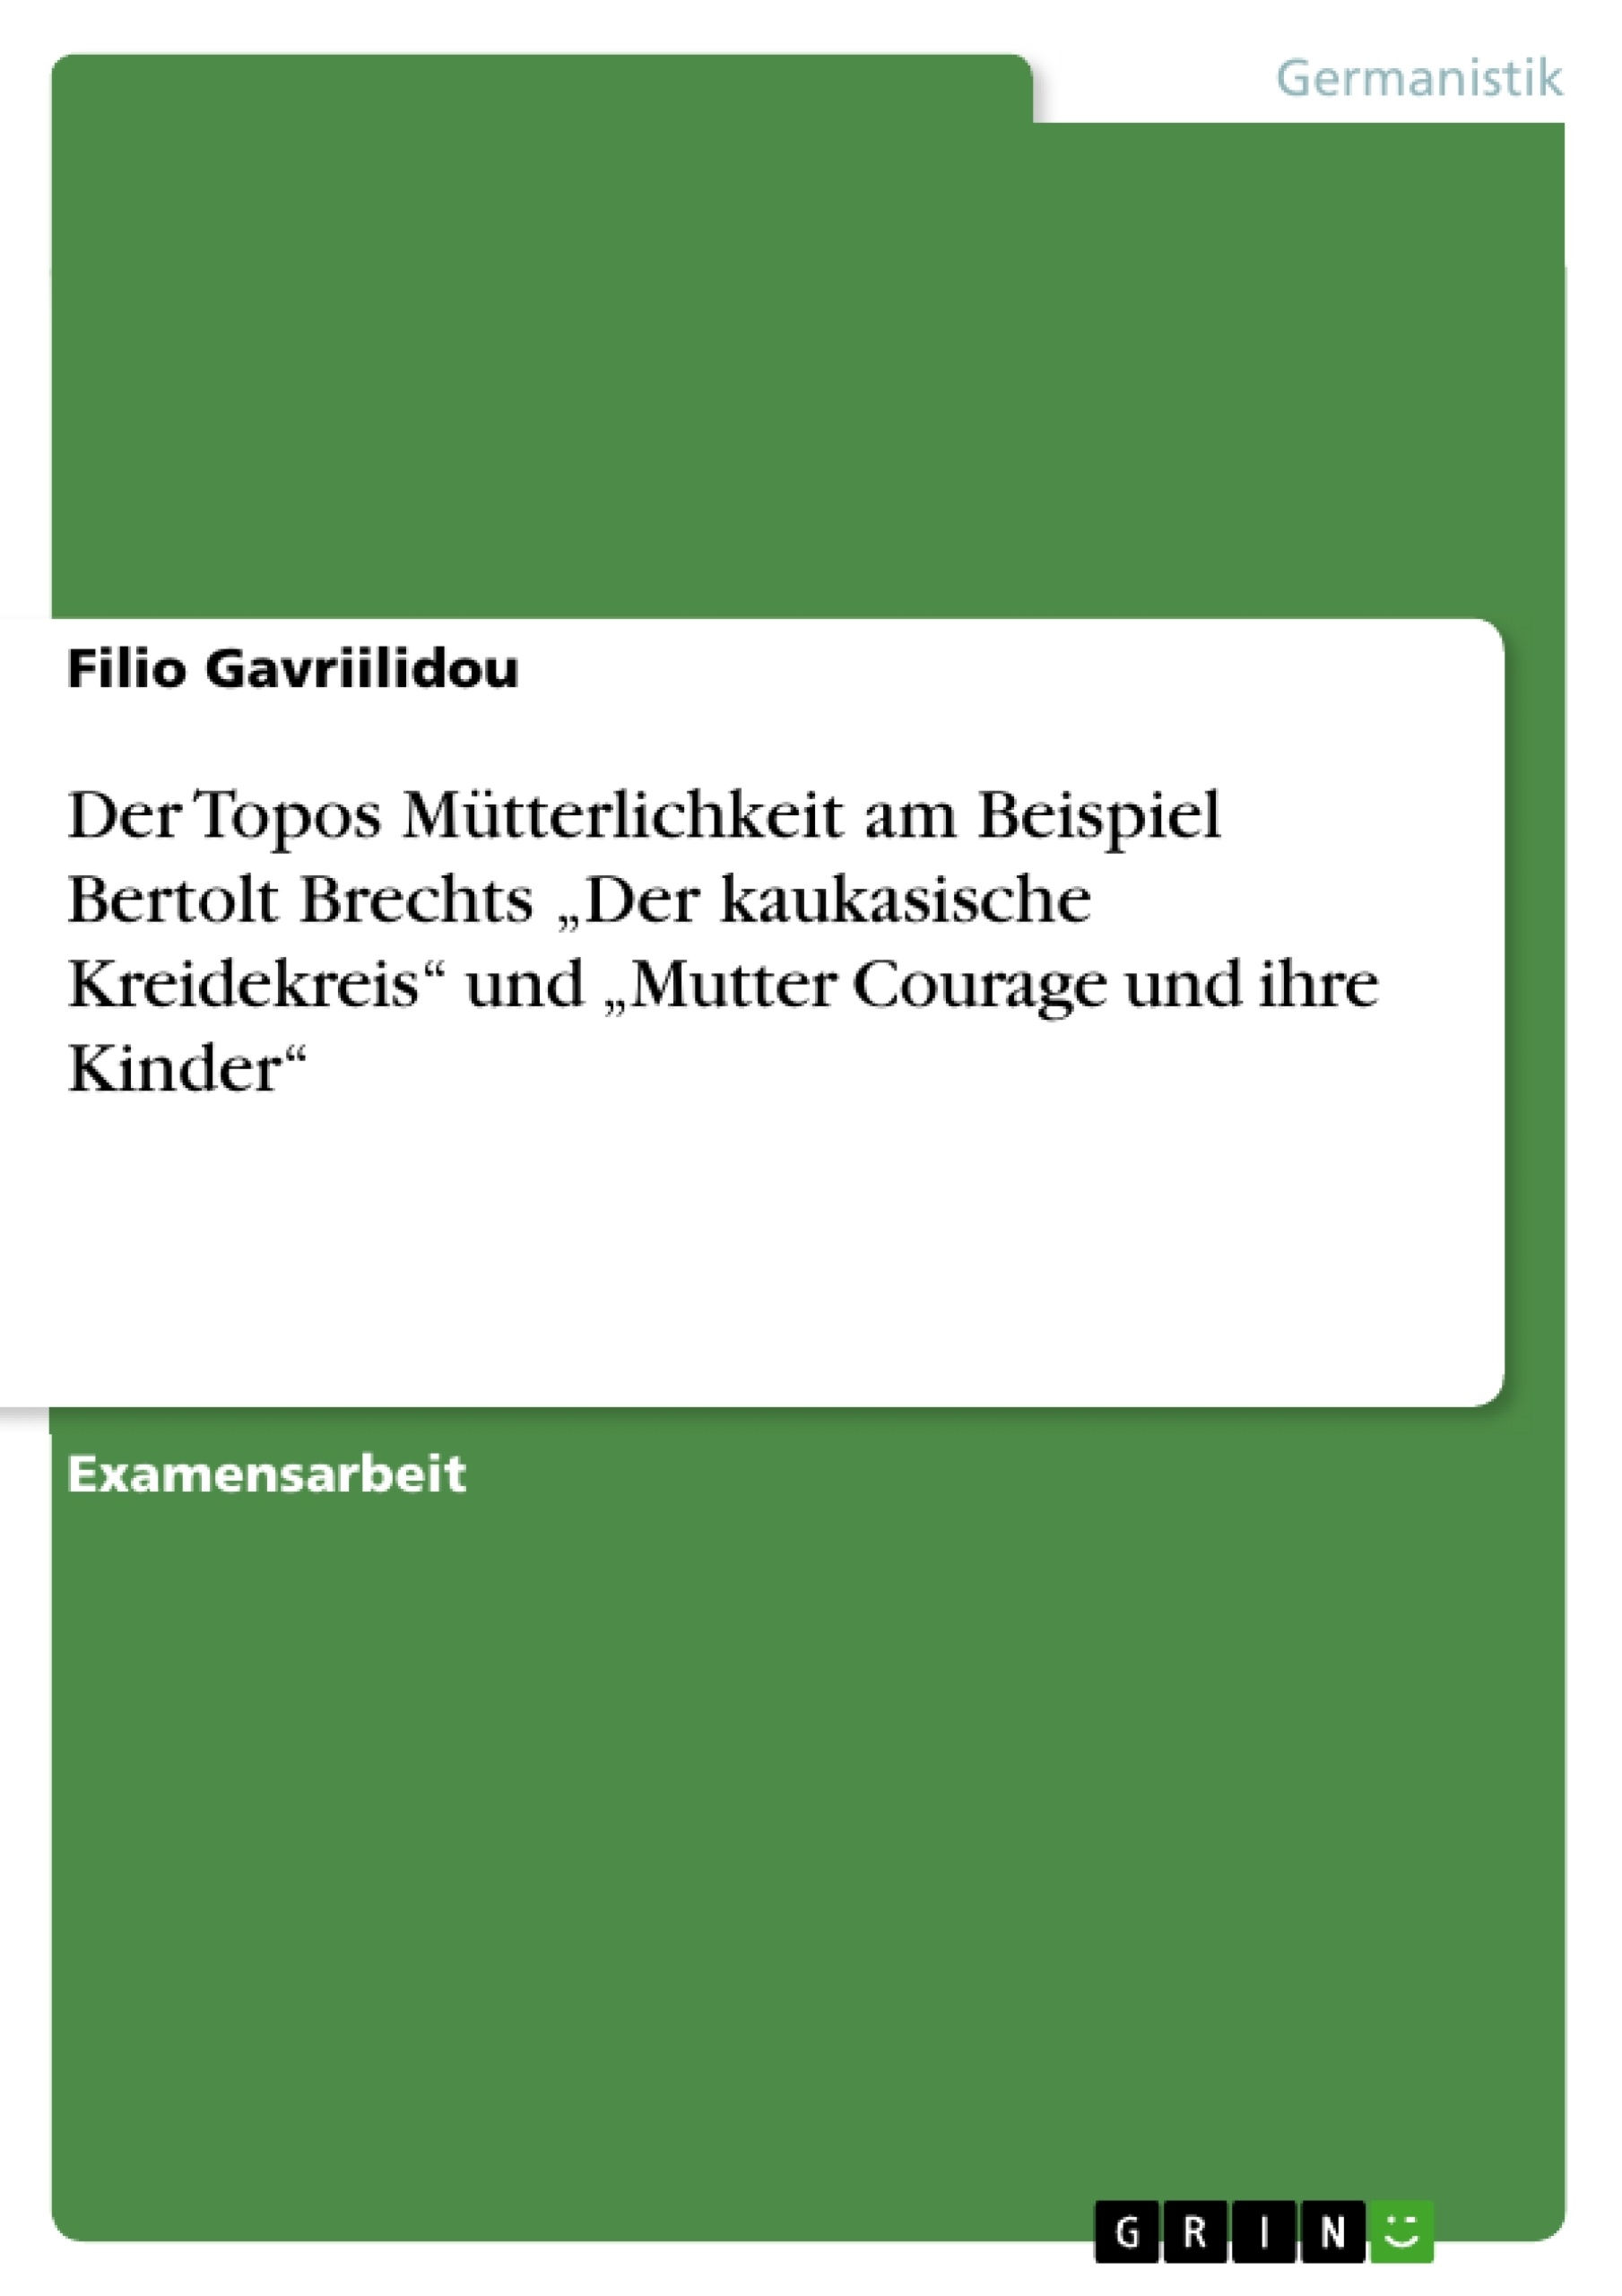 Titre: Der Topos Mütterlichkeit am Beispiel  Bertolt Brechts „Der kaukasische Kreidekreis“ und „Mutter Courage und ihre Kinder“